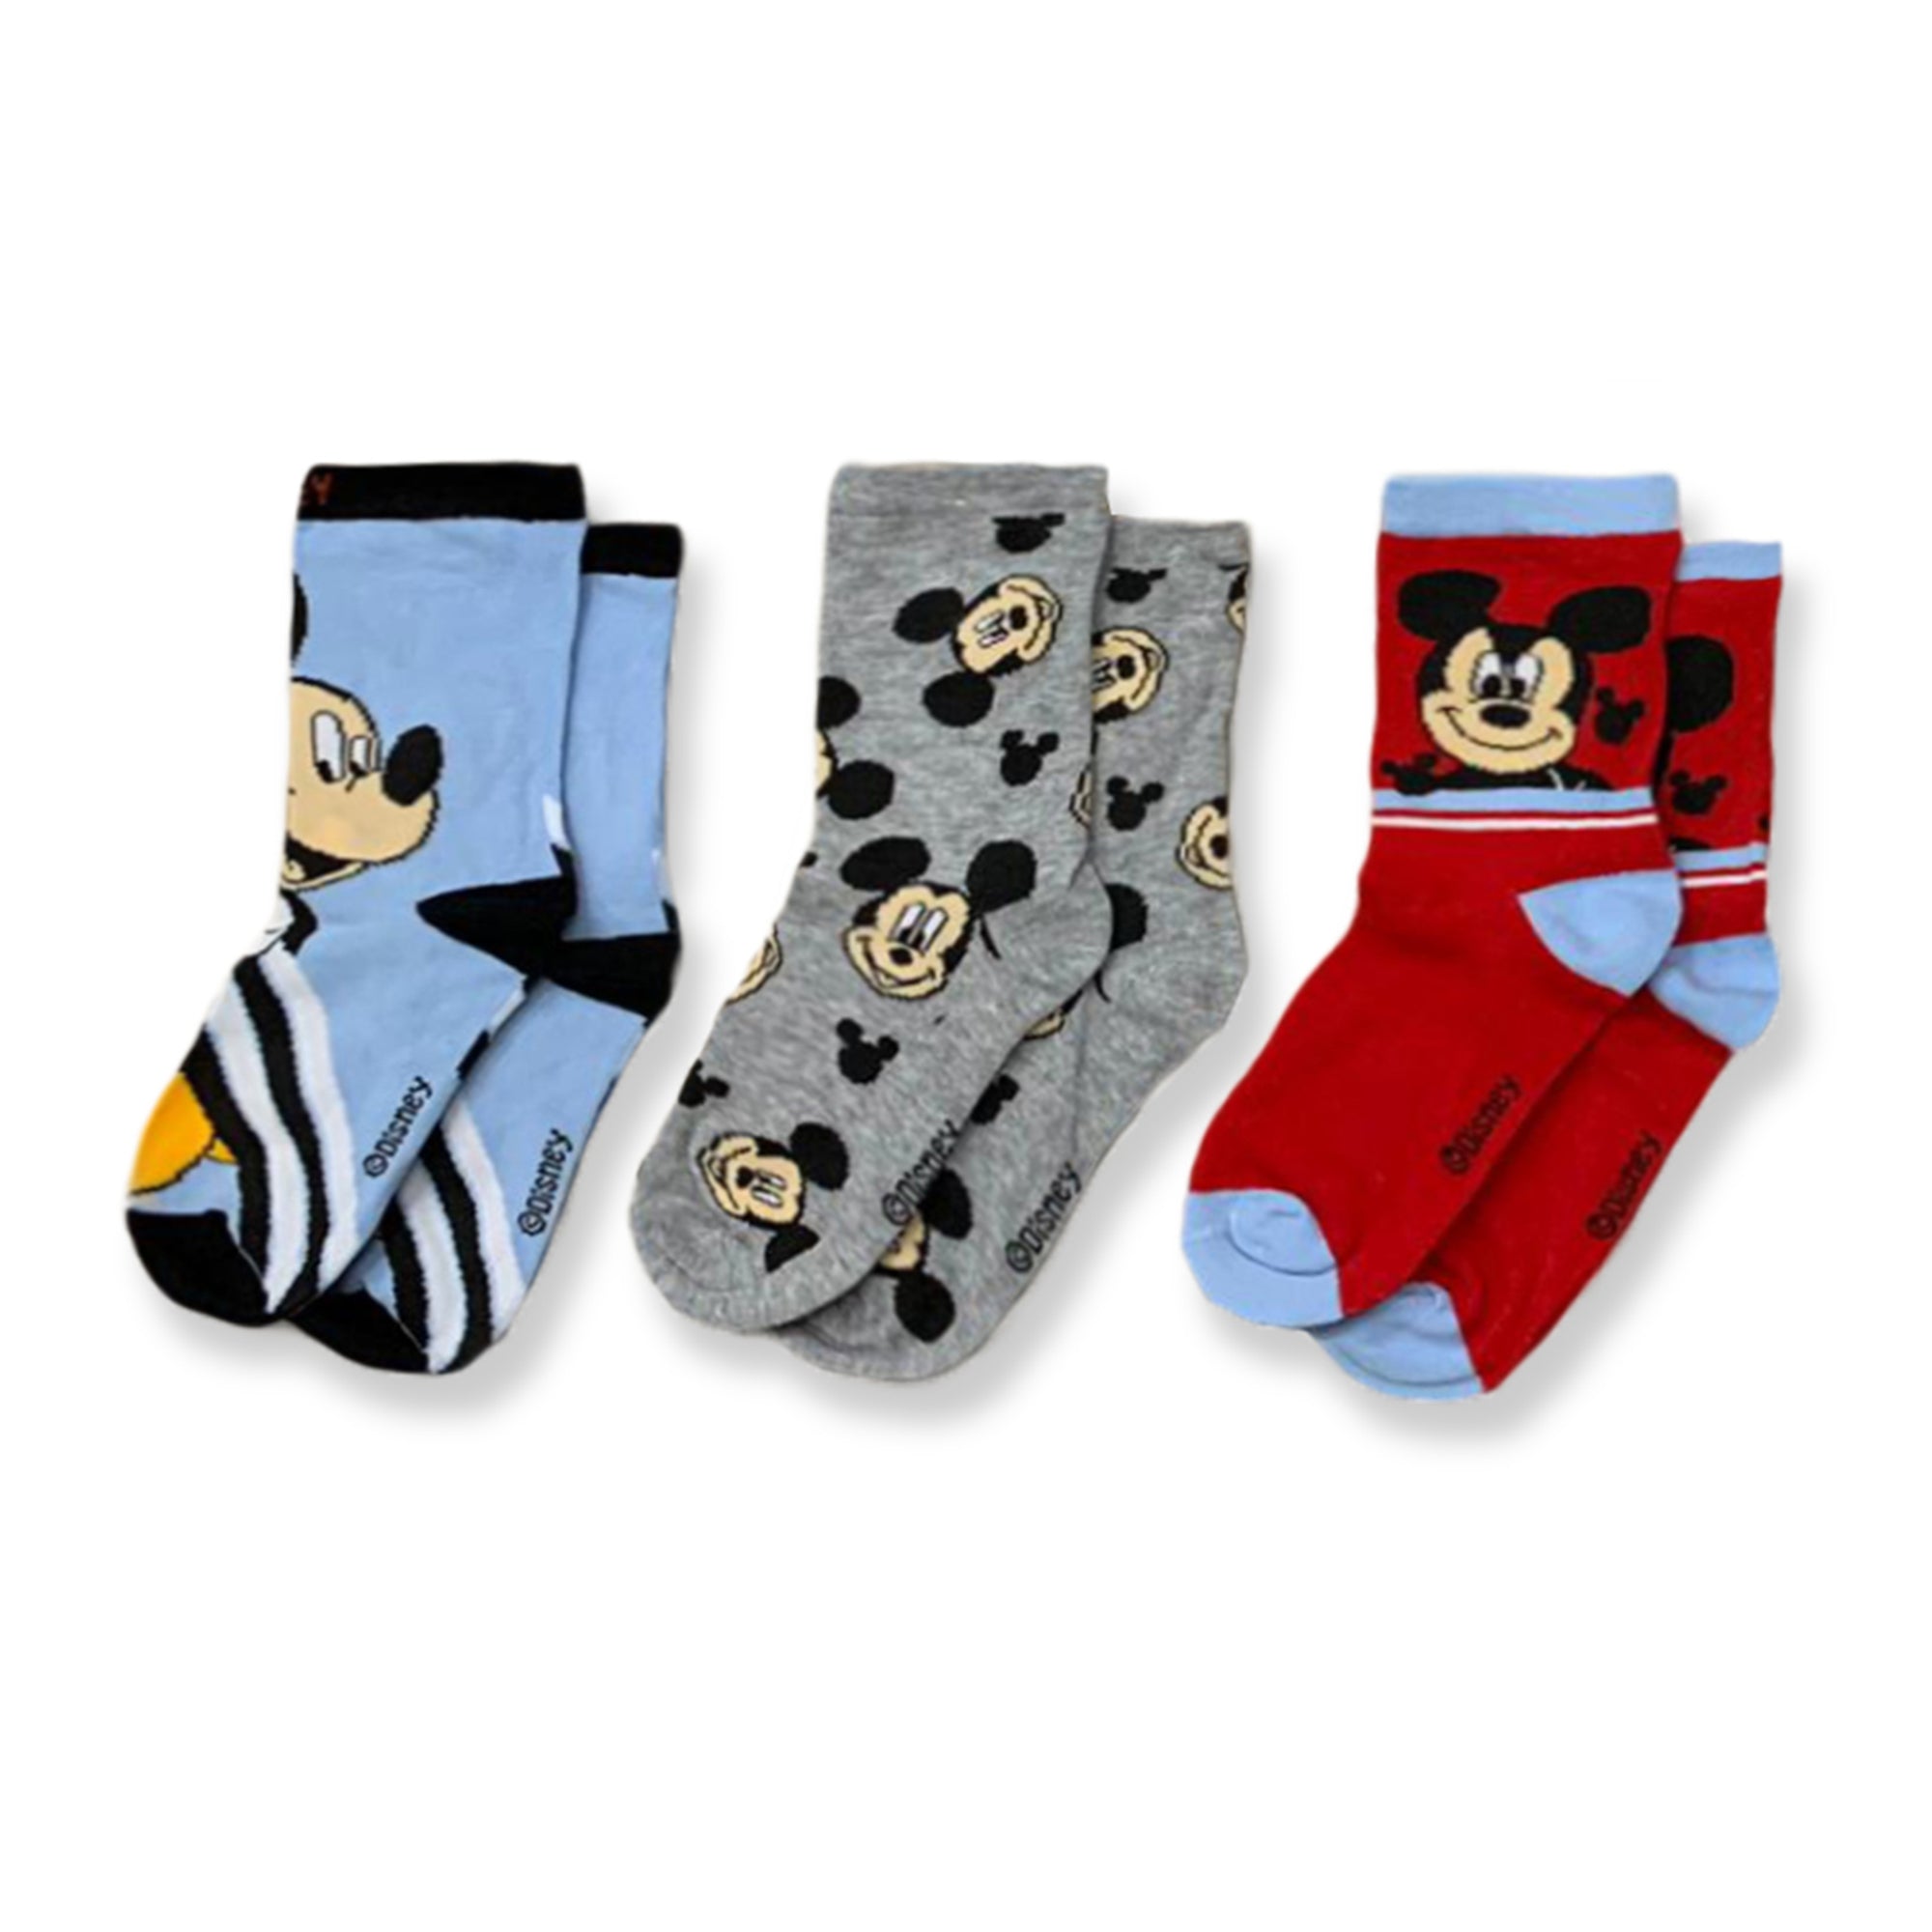 Calzini Disney Mickey Mouse Topolino set 3 Paia in cotone per bambino 3311